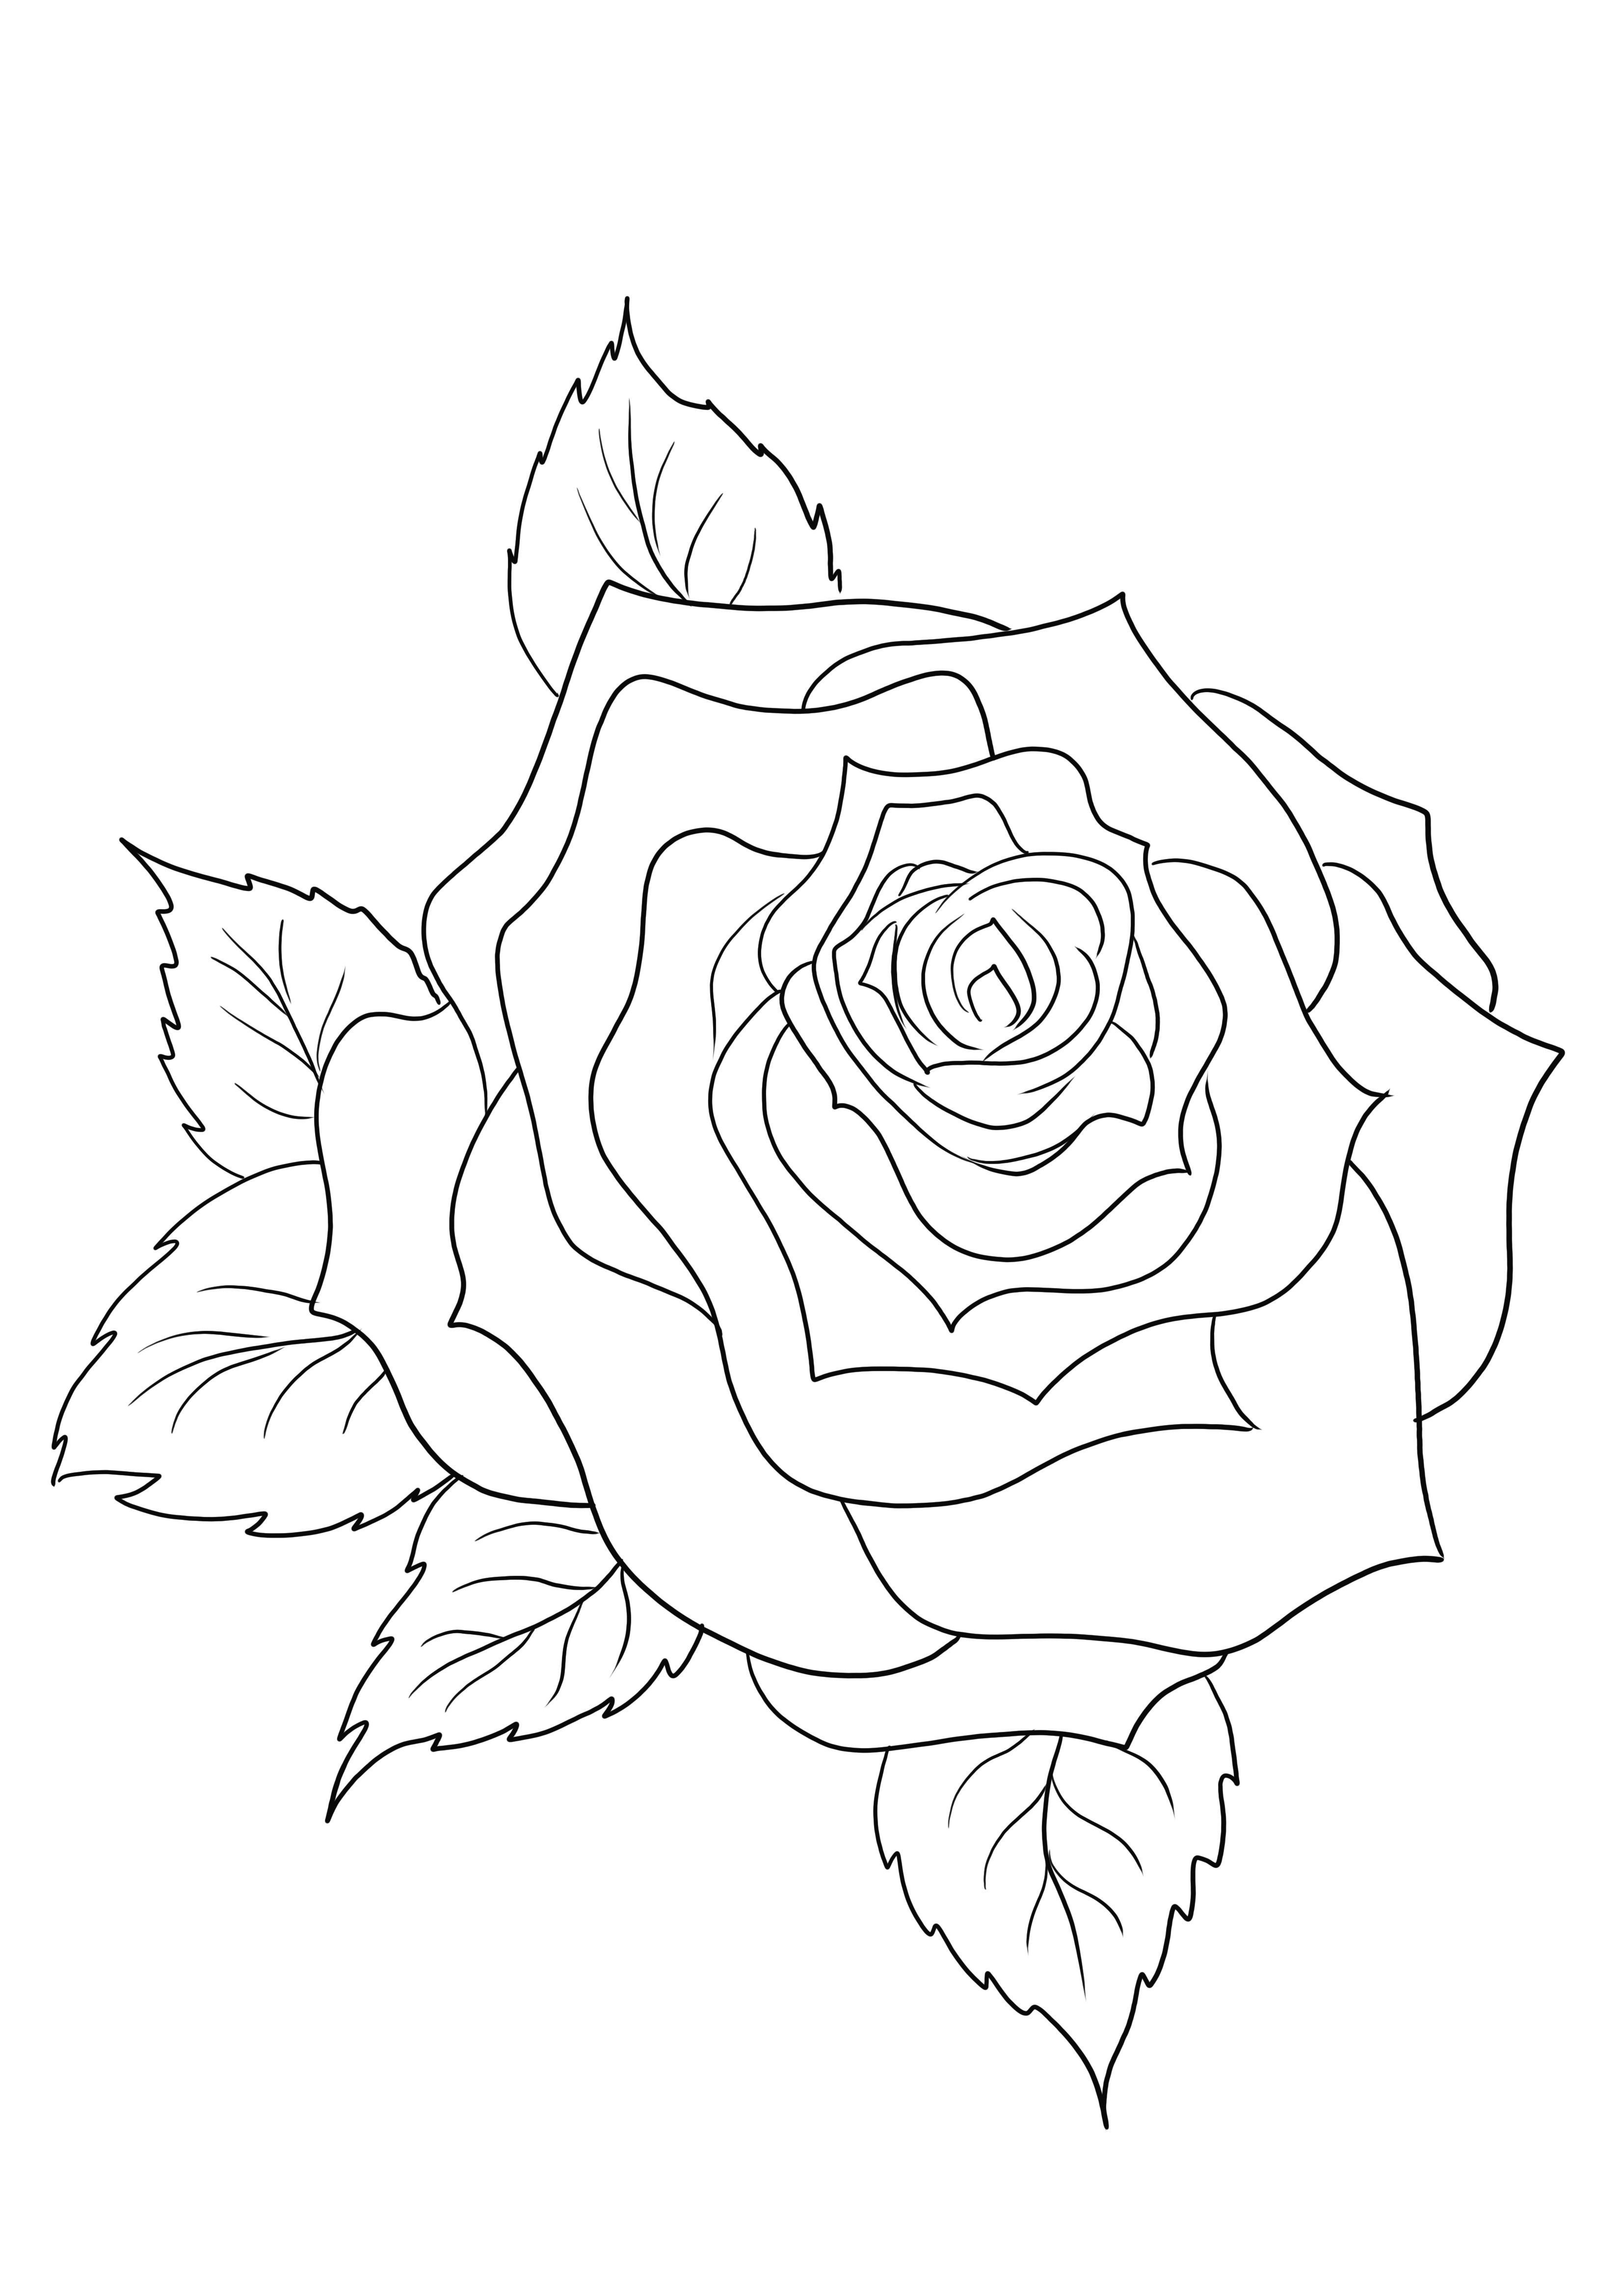 Belle feuille simplement à colorier d'une Rose à imprimer ou à télécharger